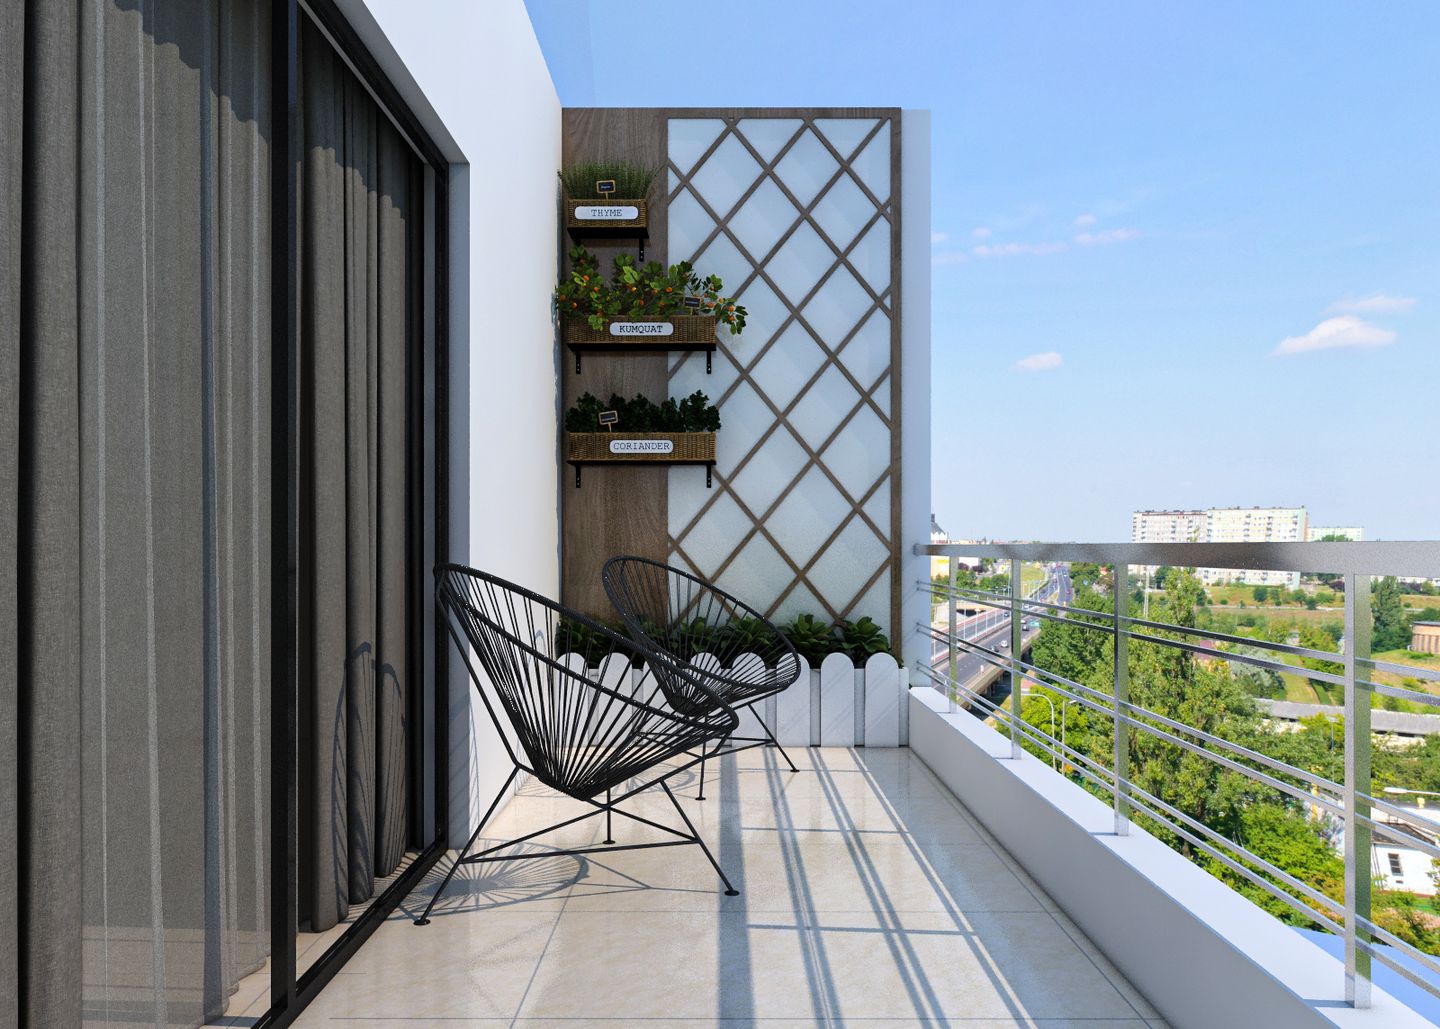 Contemporary Spacious Balcony Design For Convenience & Low Maintenance - Livspace